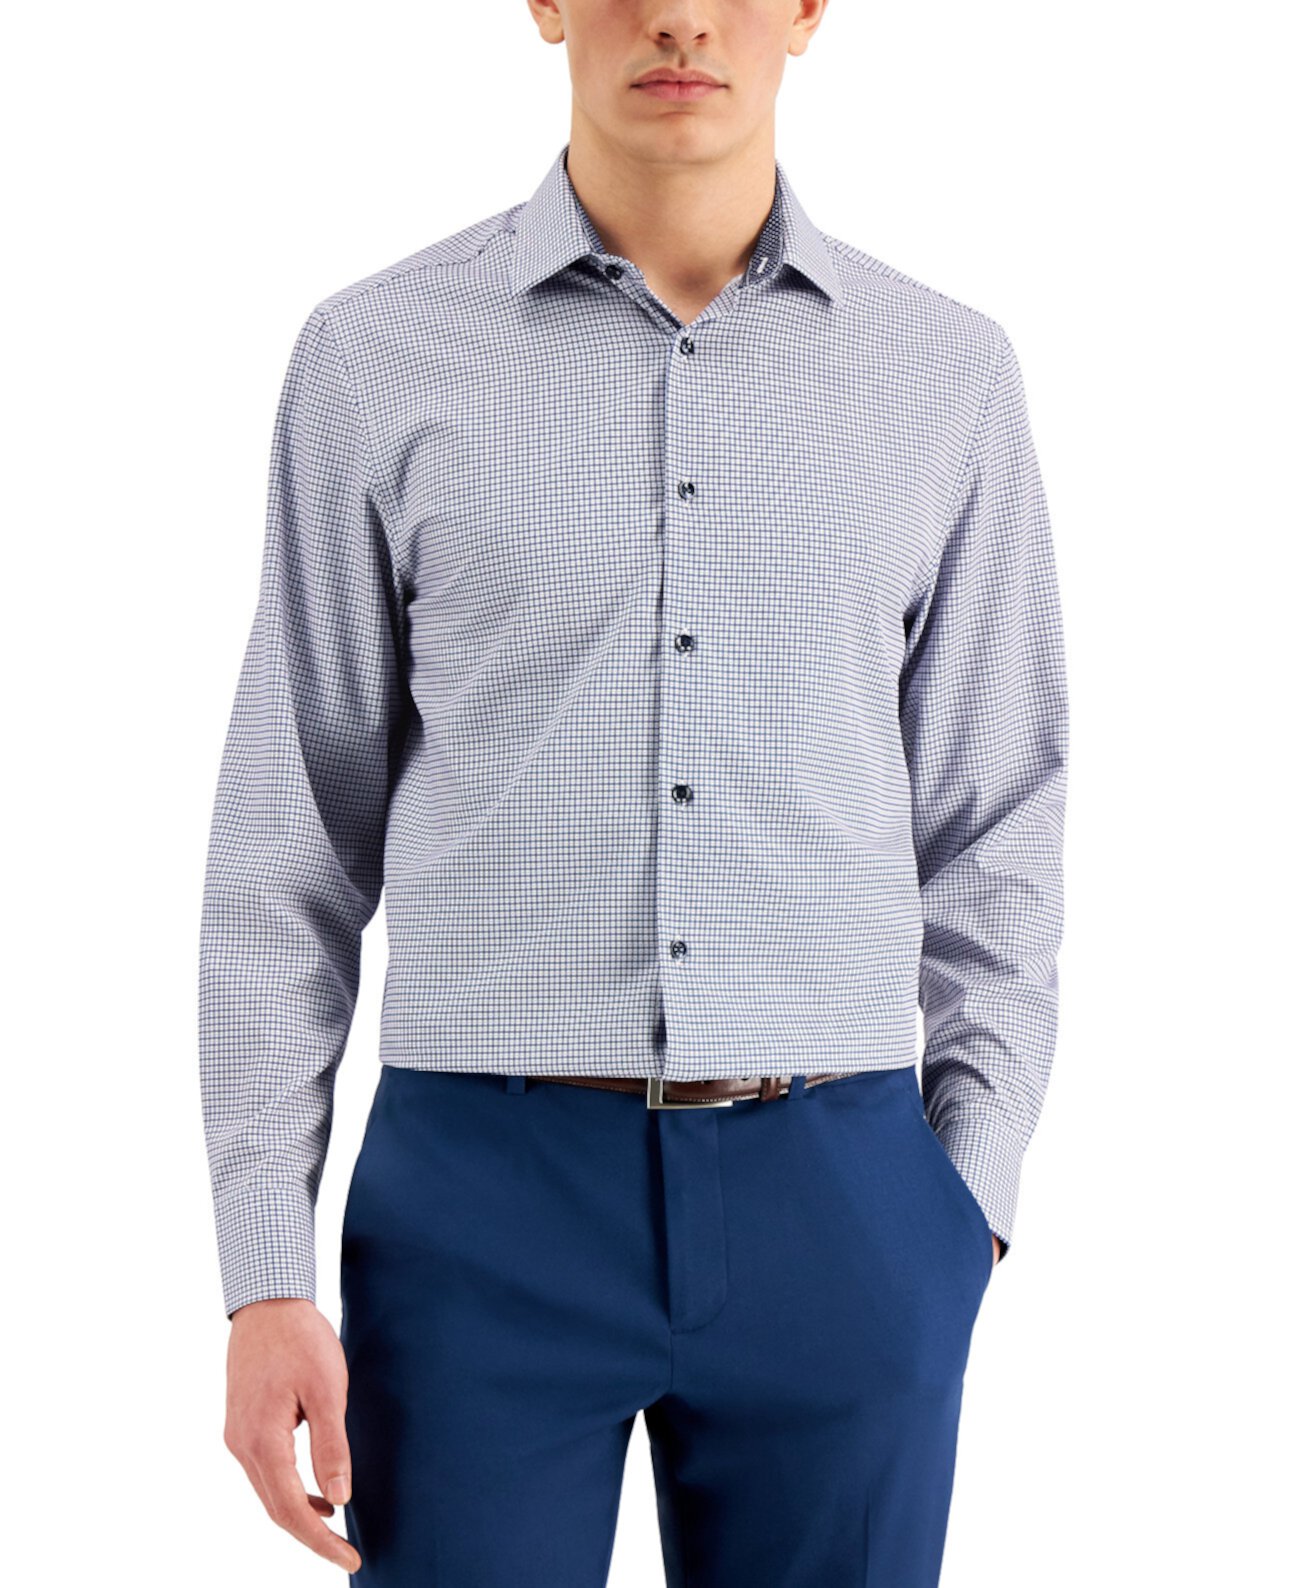 Мужская приталенная классическая рубашка из эластичного эластичного материала с геометрическим рисунком и плиссированной накладкой для лица Con.Struct, созданная для Macy's CONSTRUCT